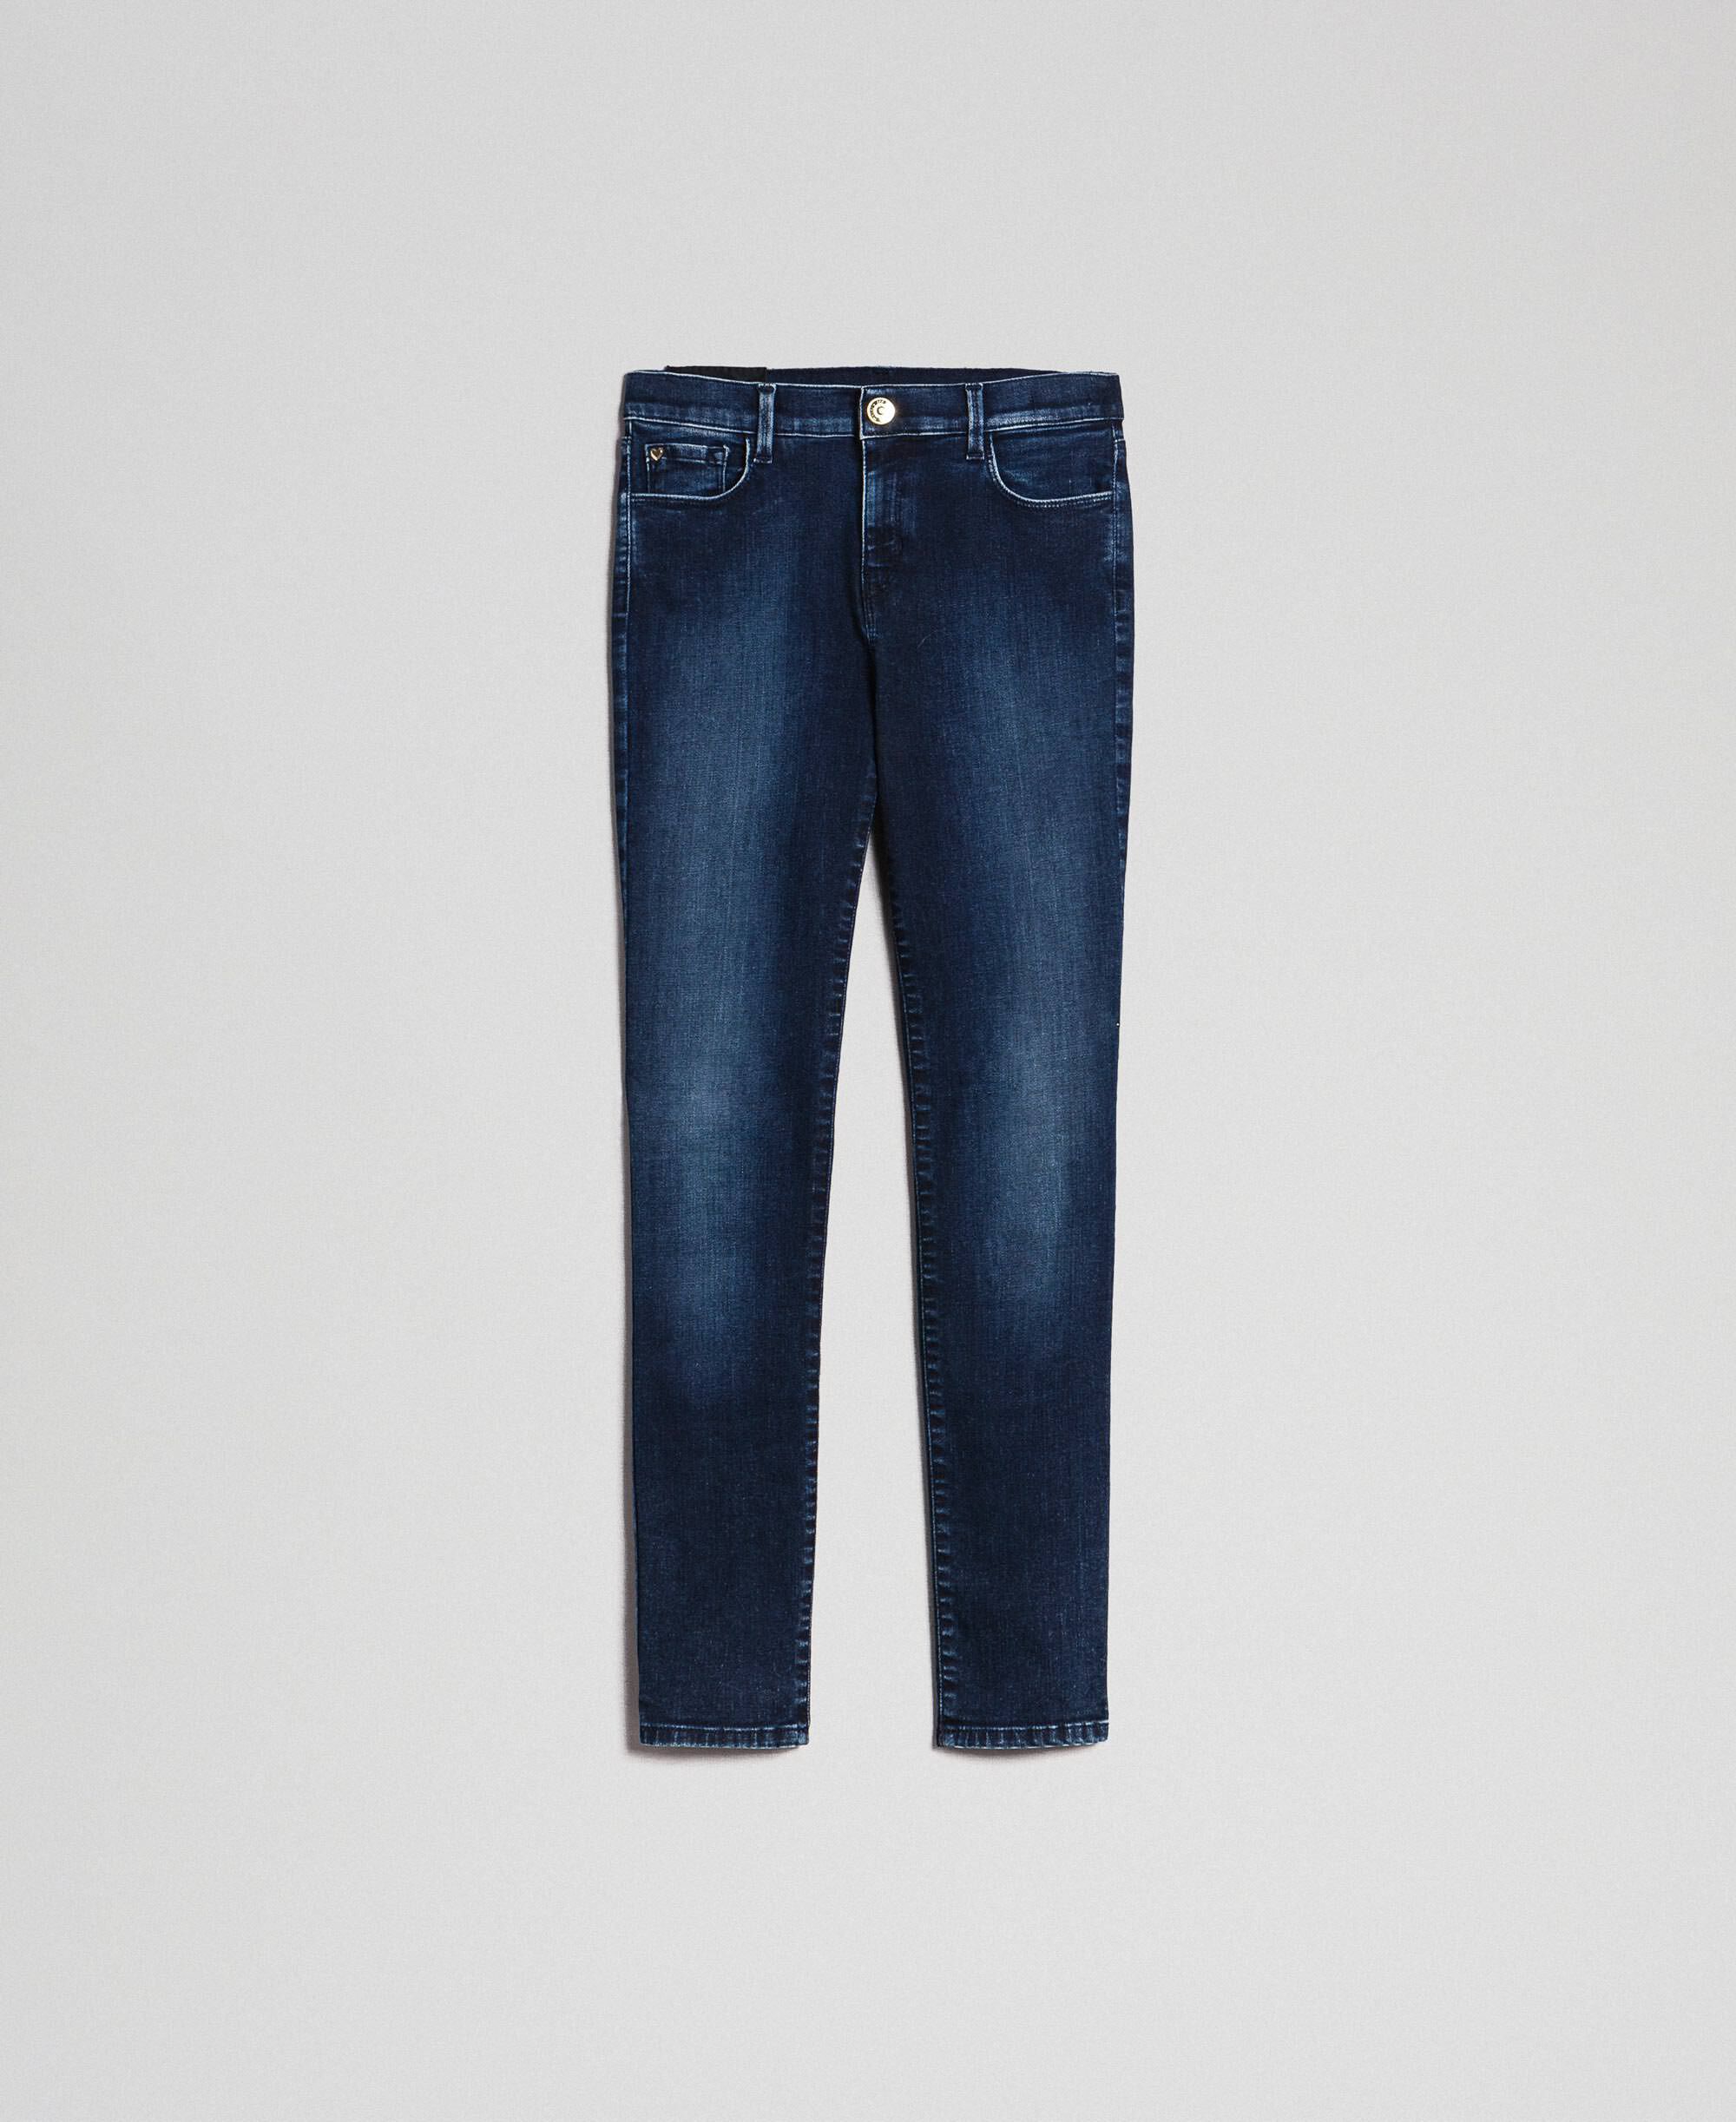 levis vintage jean shorts